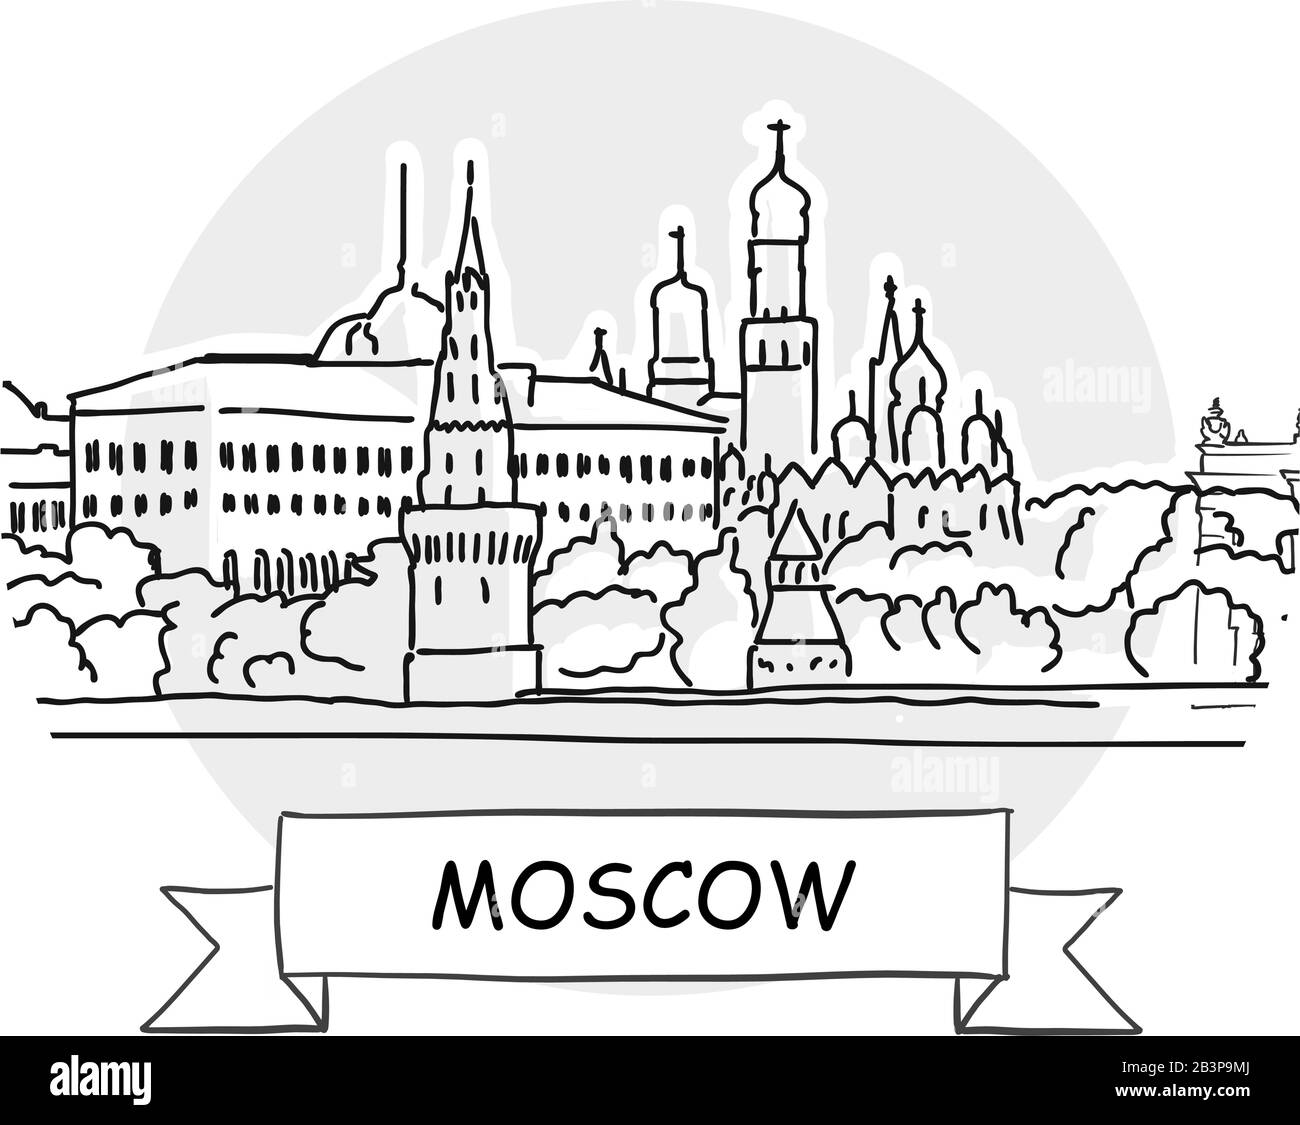 Panneau Vectoriel Moscow Cityscape. Illustration d'un dessin au trait avec ruban et titre. Illustration de Vecteur